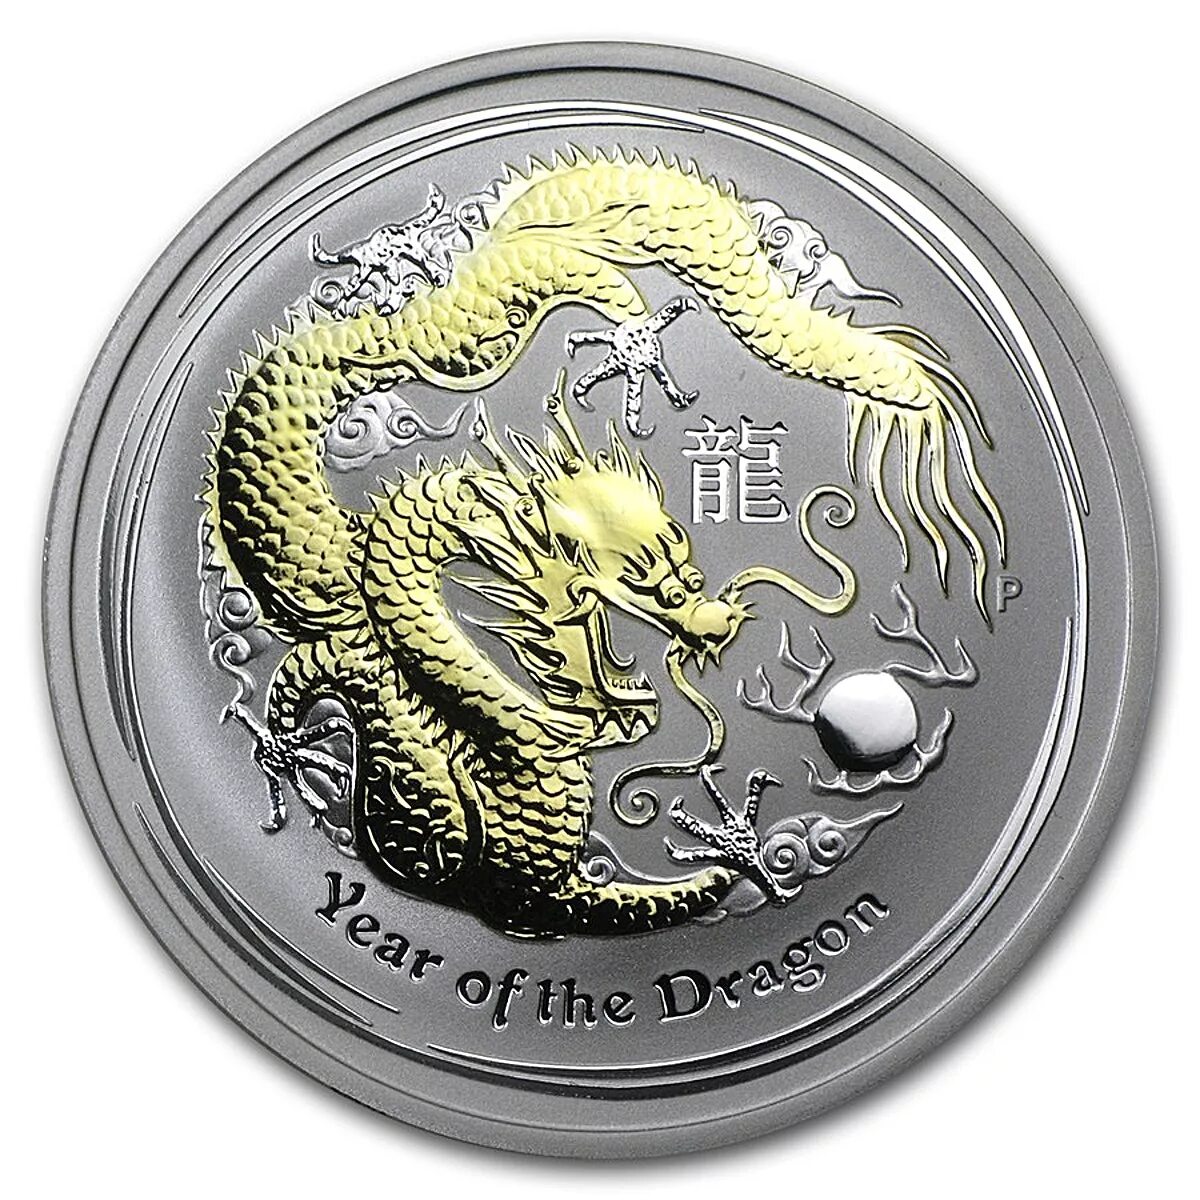 Монета года дракона. Монета дракон Лунар. Монета год дракона 2012 серебро. Amusement only монета с драконом. Монета год дракона 2012 серебро в блистере.